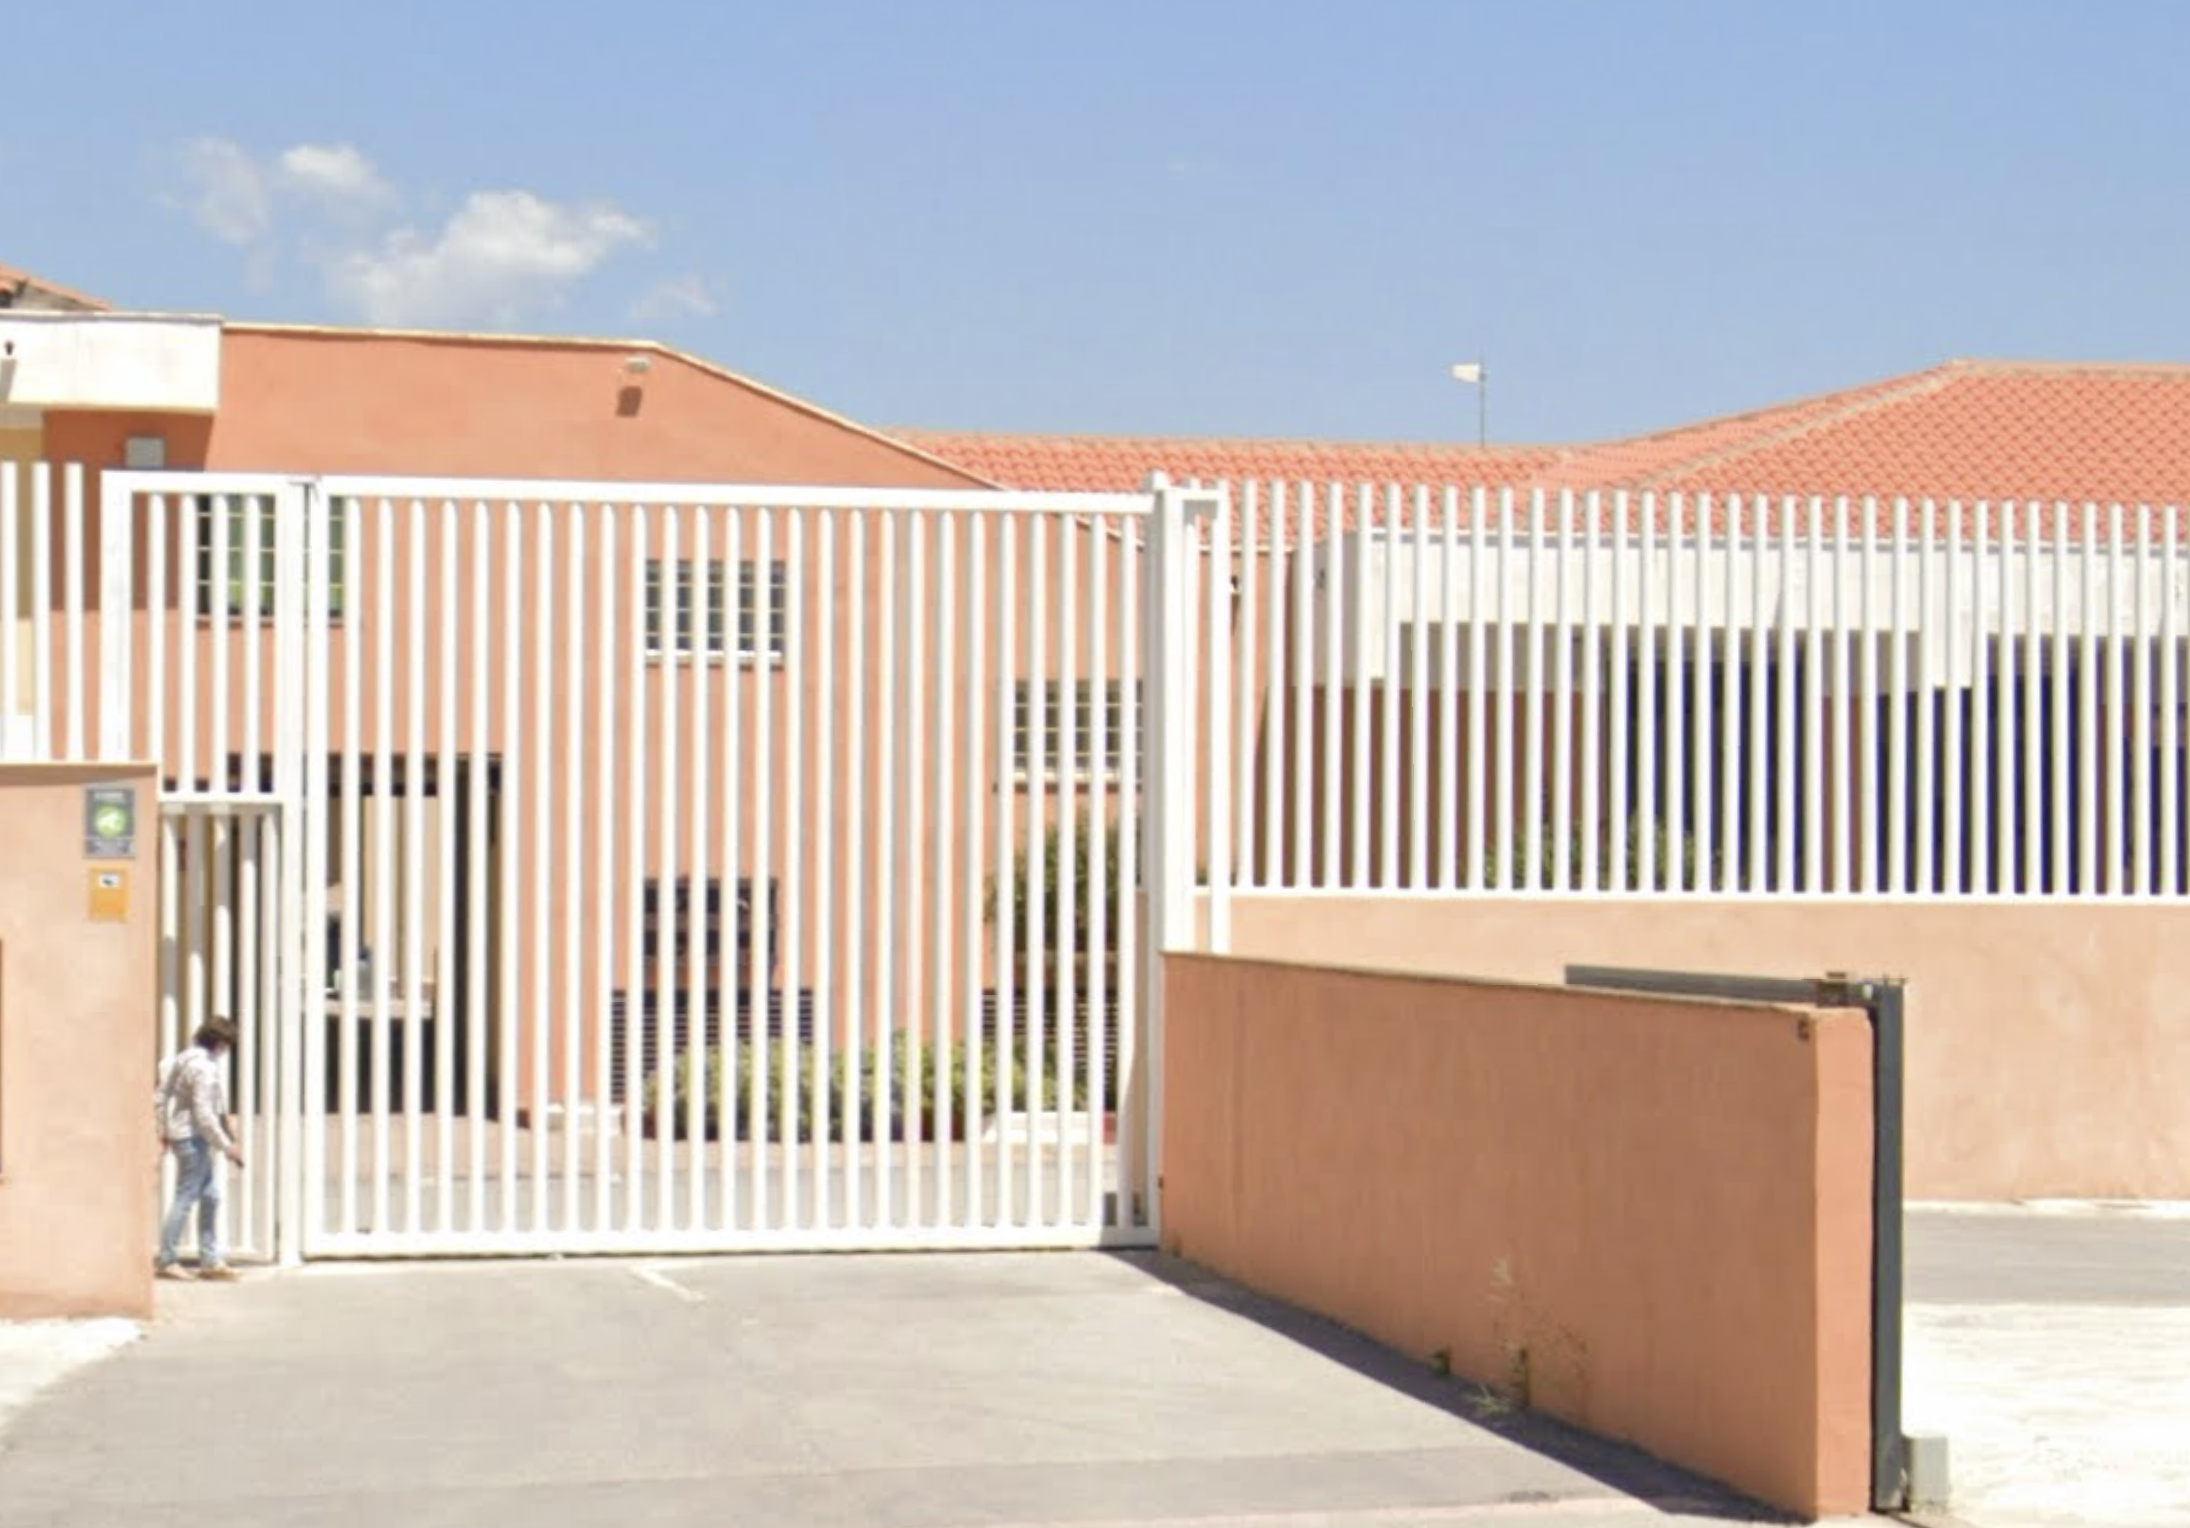 Un centro de internamiento de menores en Granada.